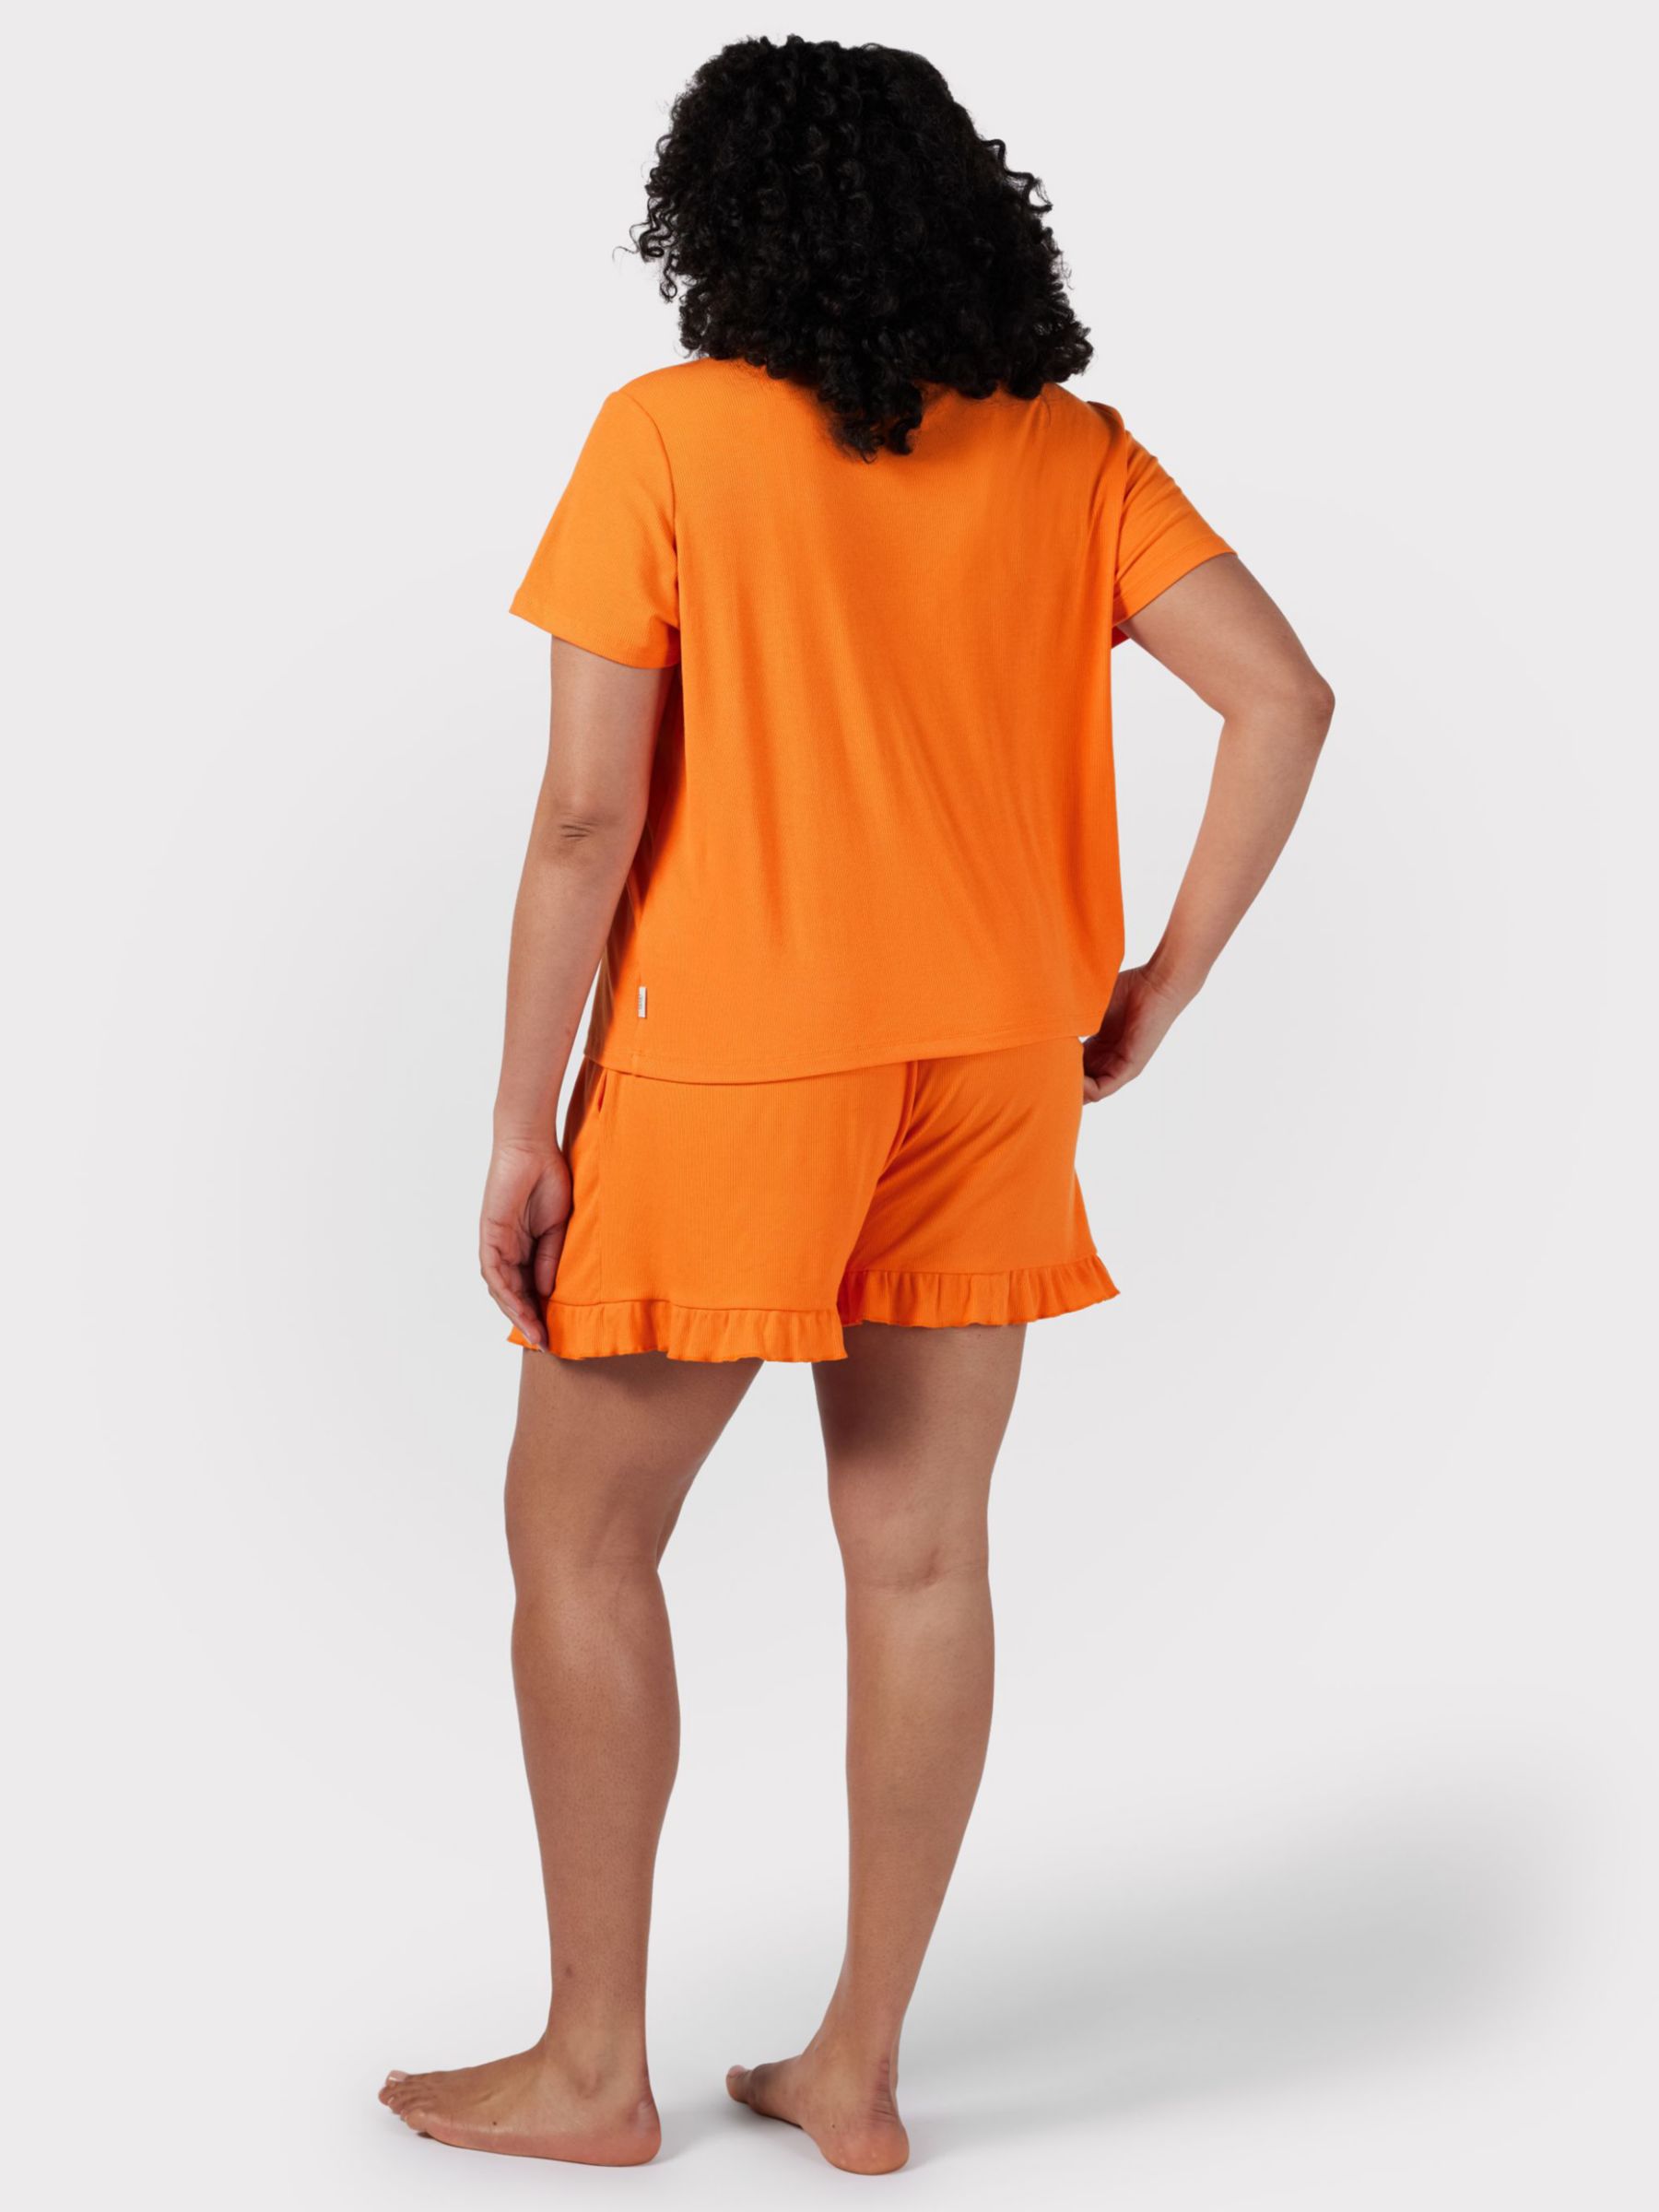 Chelsea Peers Curve Ribbed Short Pyjamas, Orange, 18